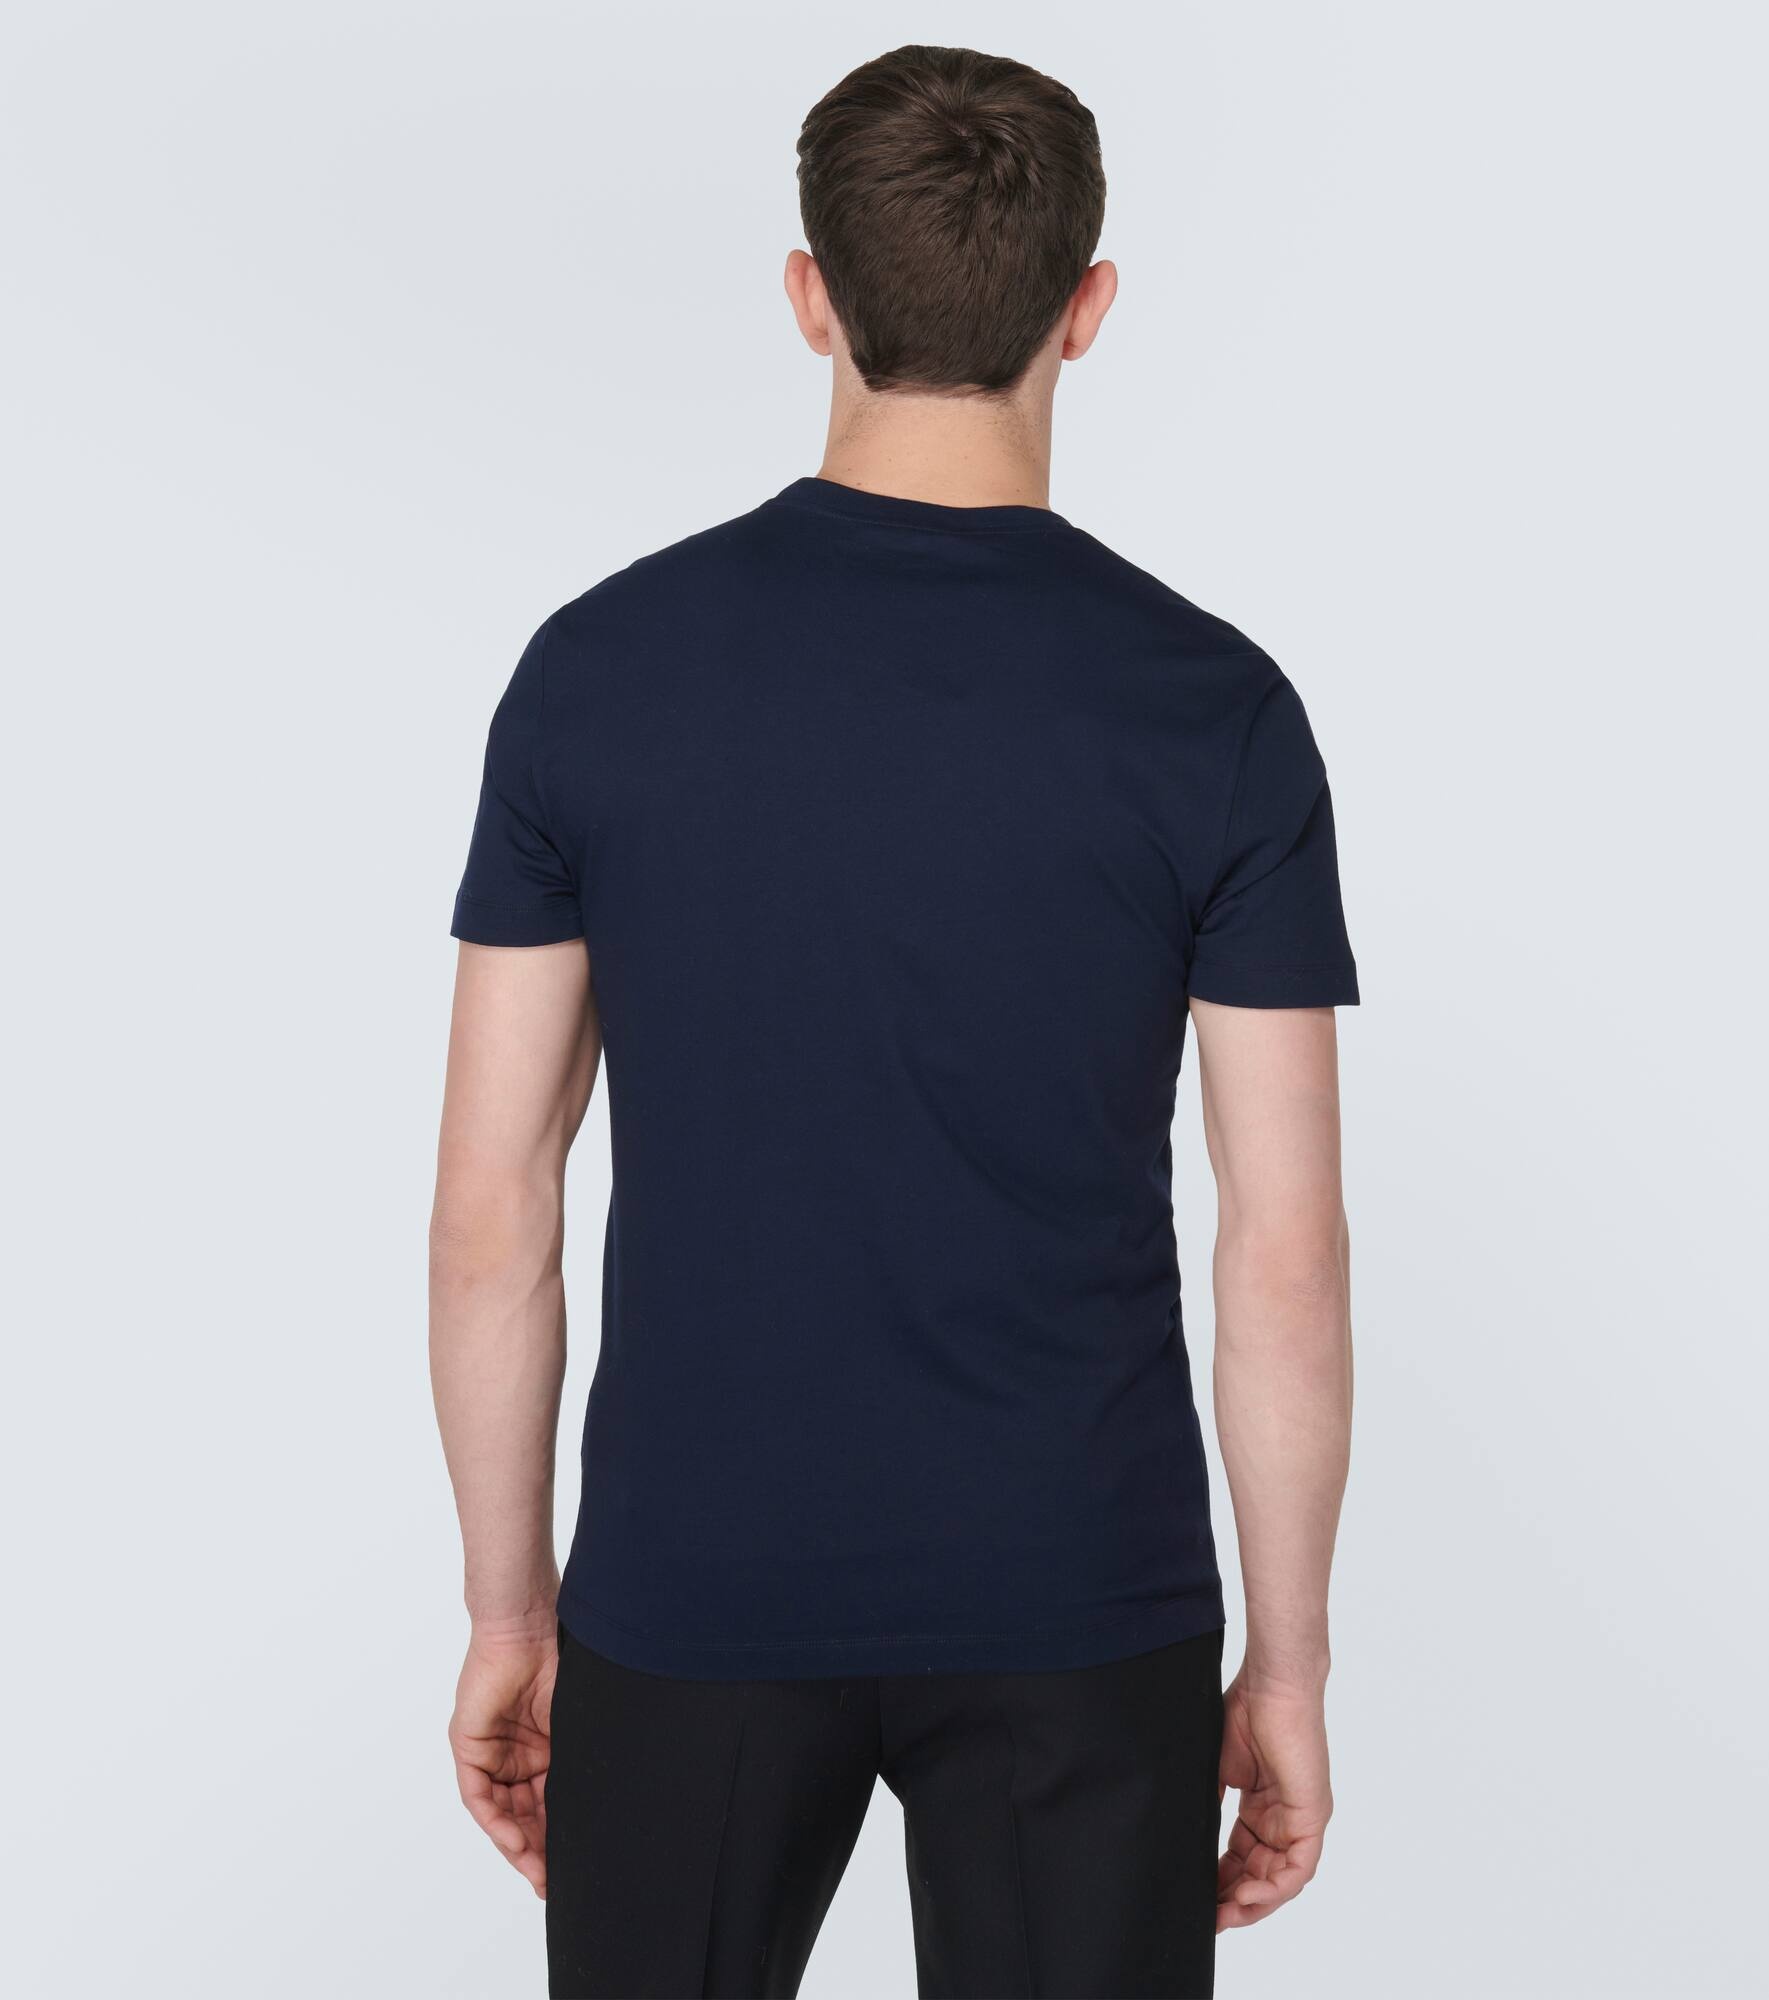 Medusa cotton jersey T-shirt - 4